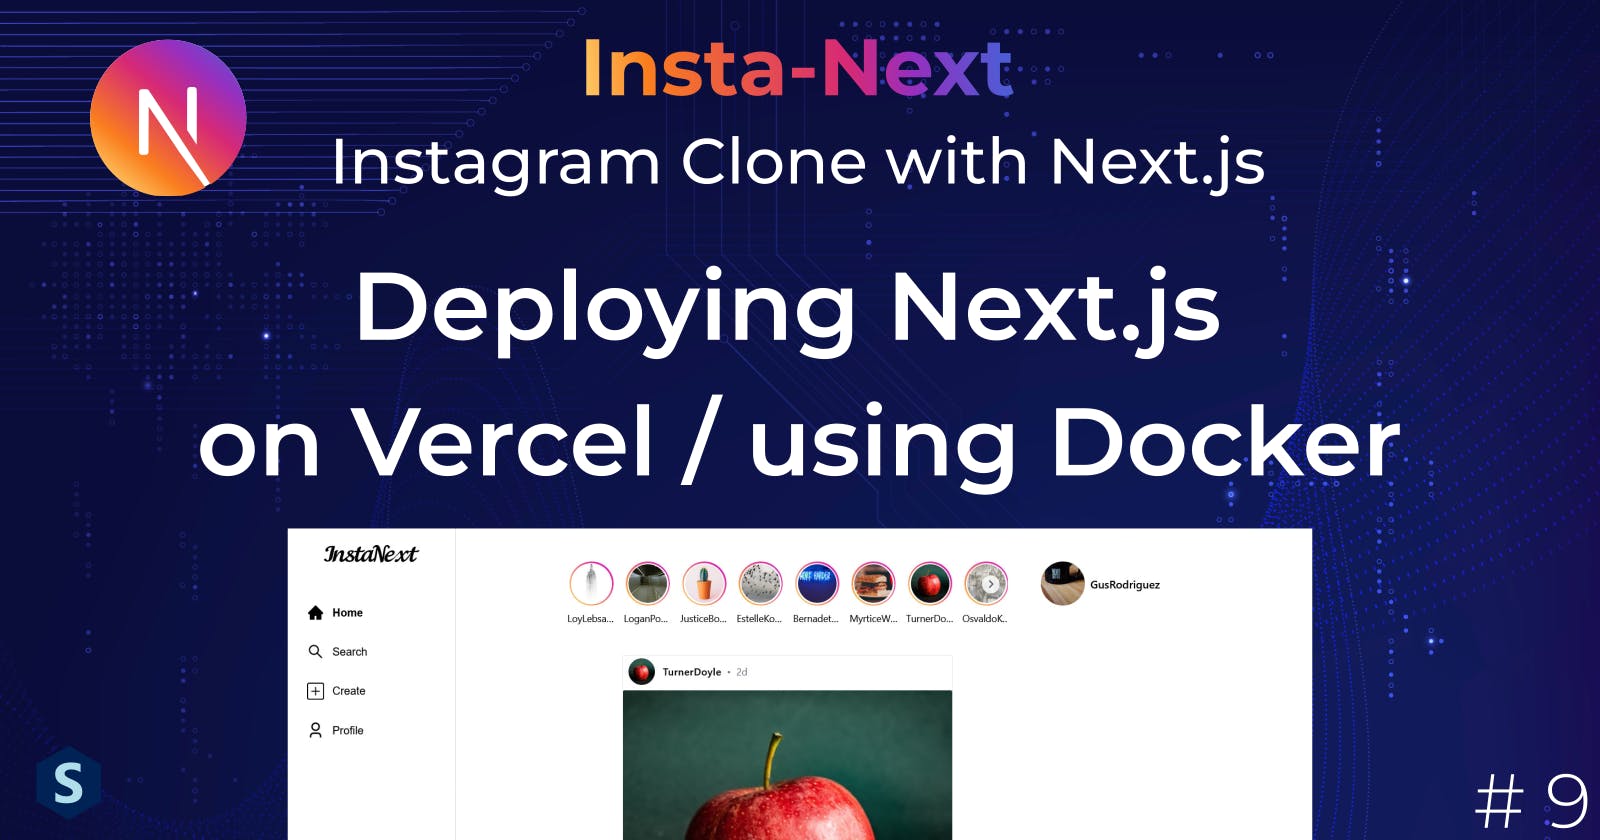 Insta-Next: Deploying Next.js on Vercel / using Docker